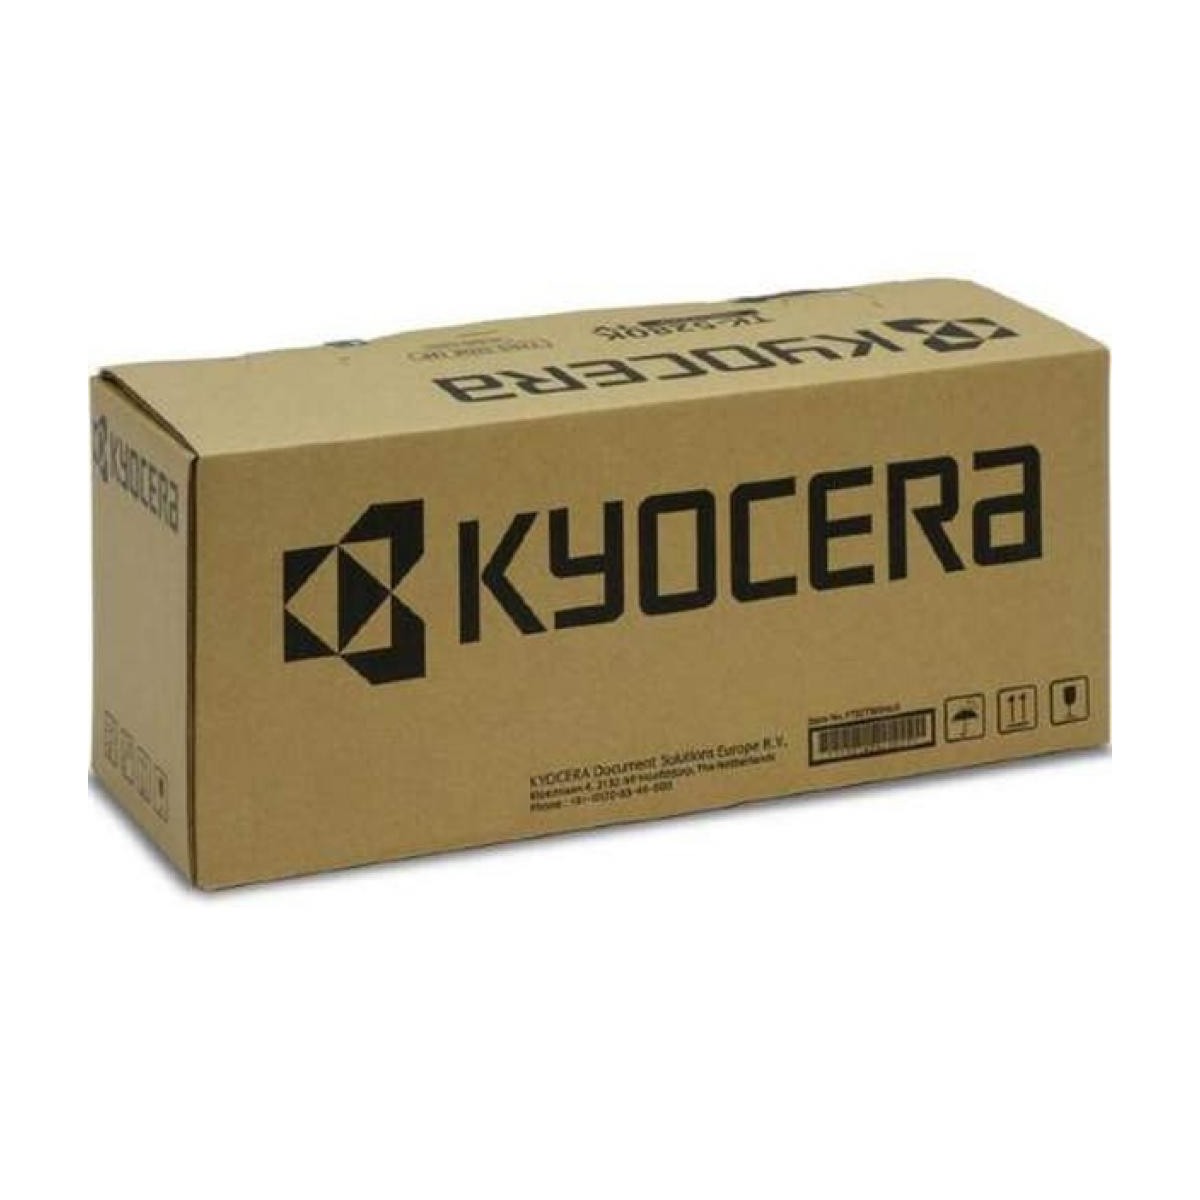 Kyocera MK-5155 - Maintenance kit - 200000 pages - Kyocera - ECOSYS M6635cidn ECOSYS M6235cidn ECOSYS M6035cidn